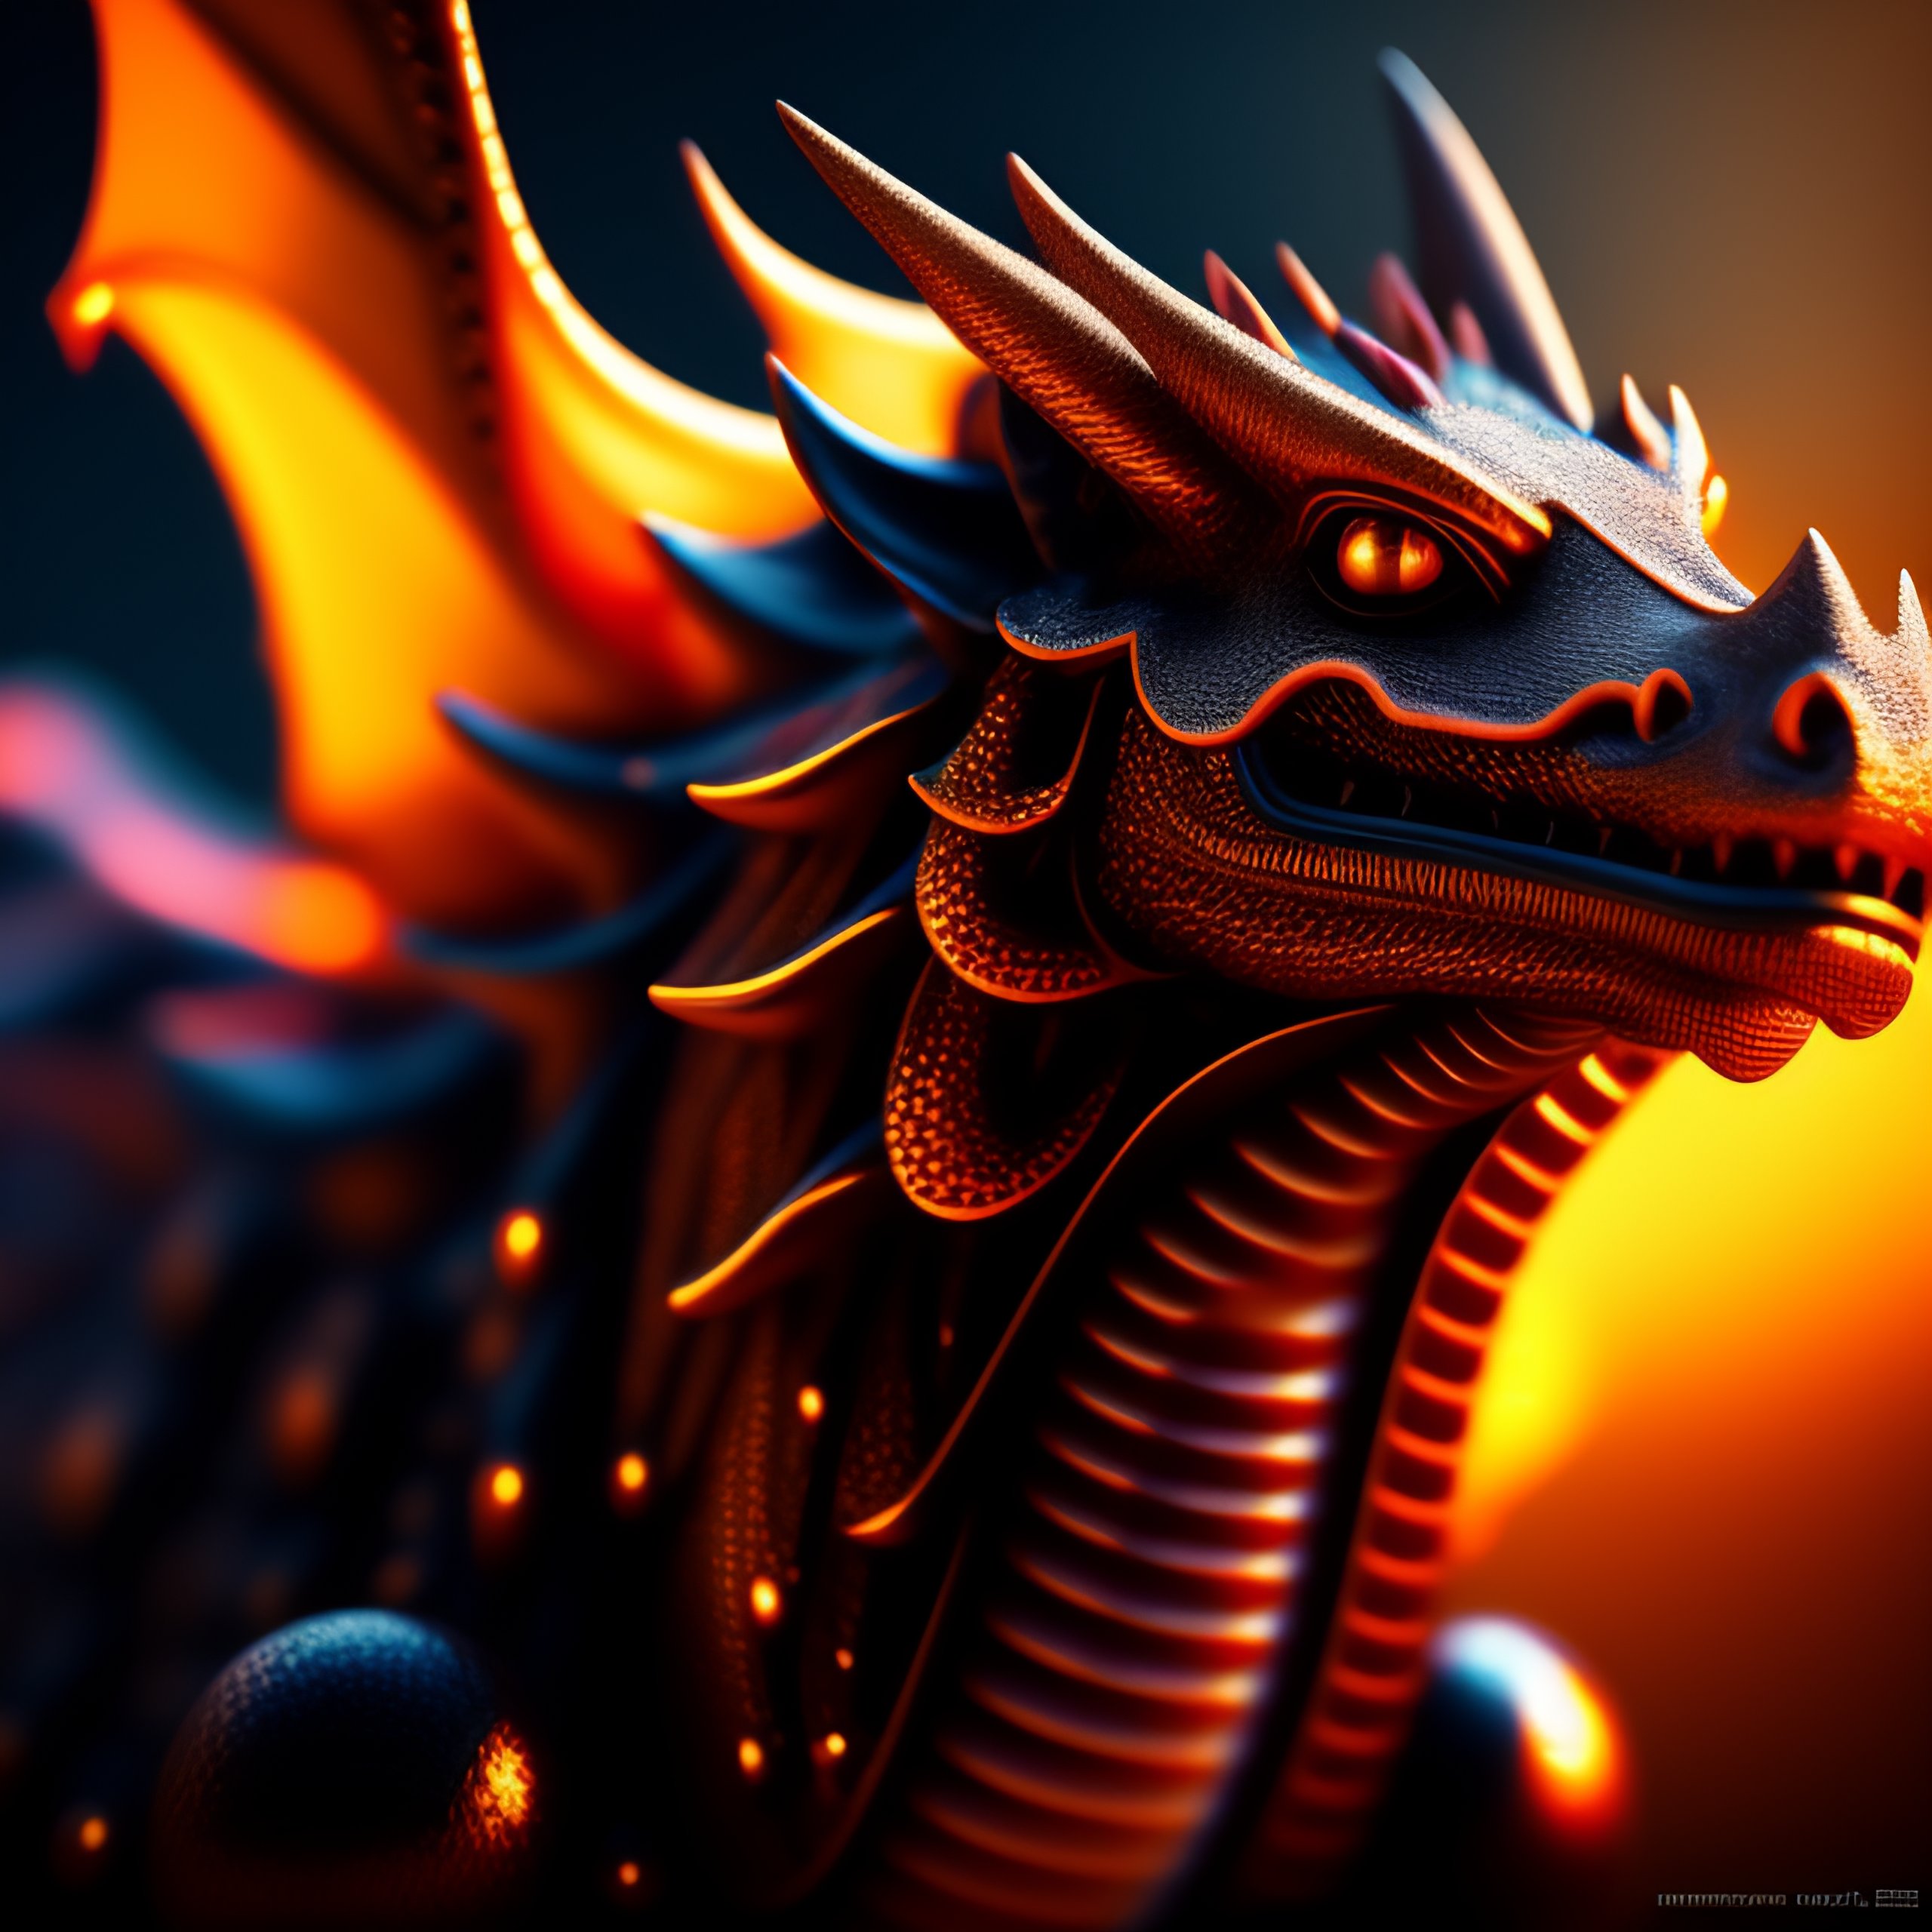 Lexica - Una foto de un dragon en unA situación inesperada, como ...